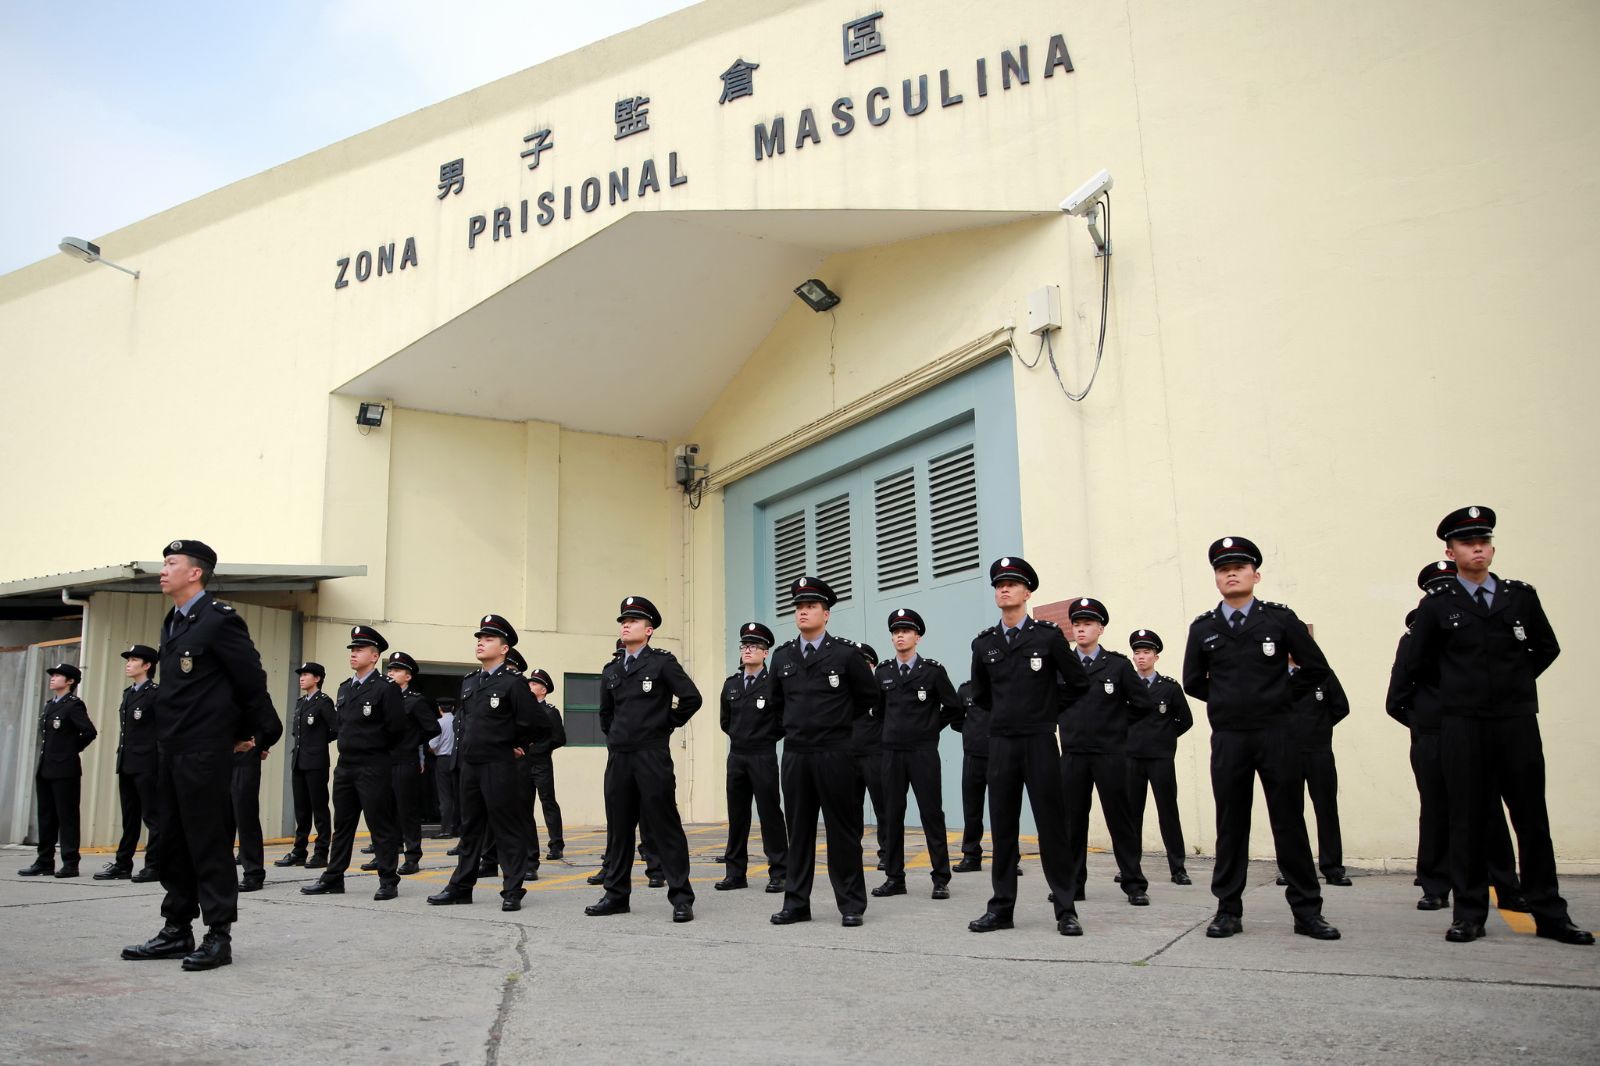 Segurança | Câmaras em celas prisionais restringem liberdades individuais – advogados